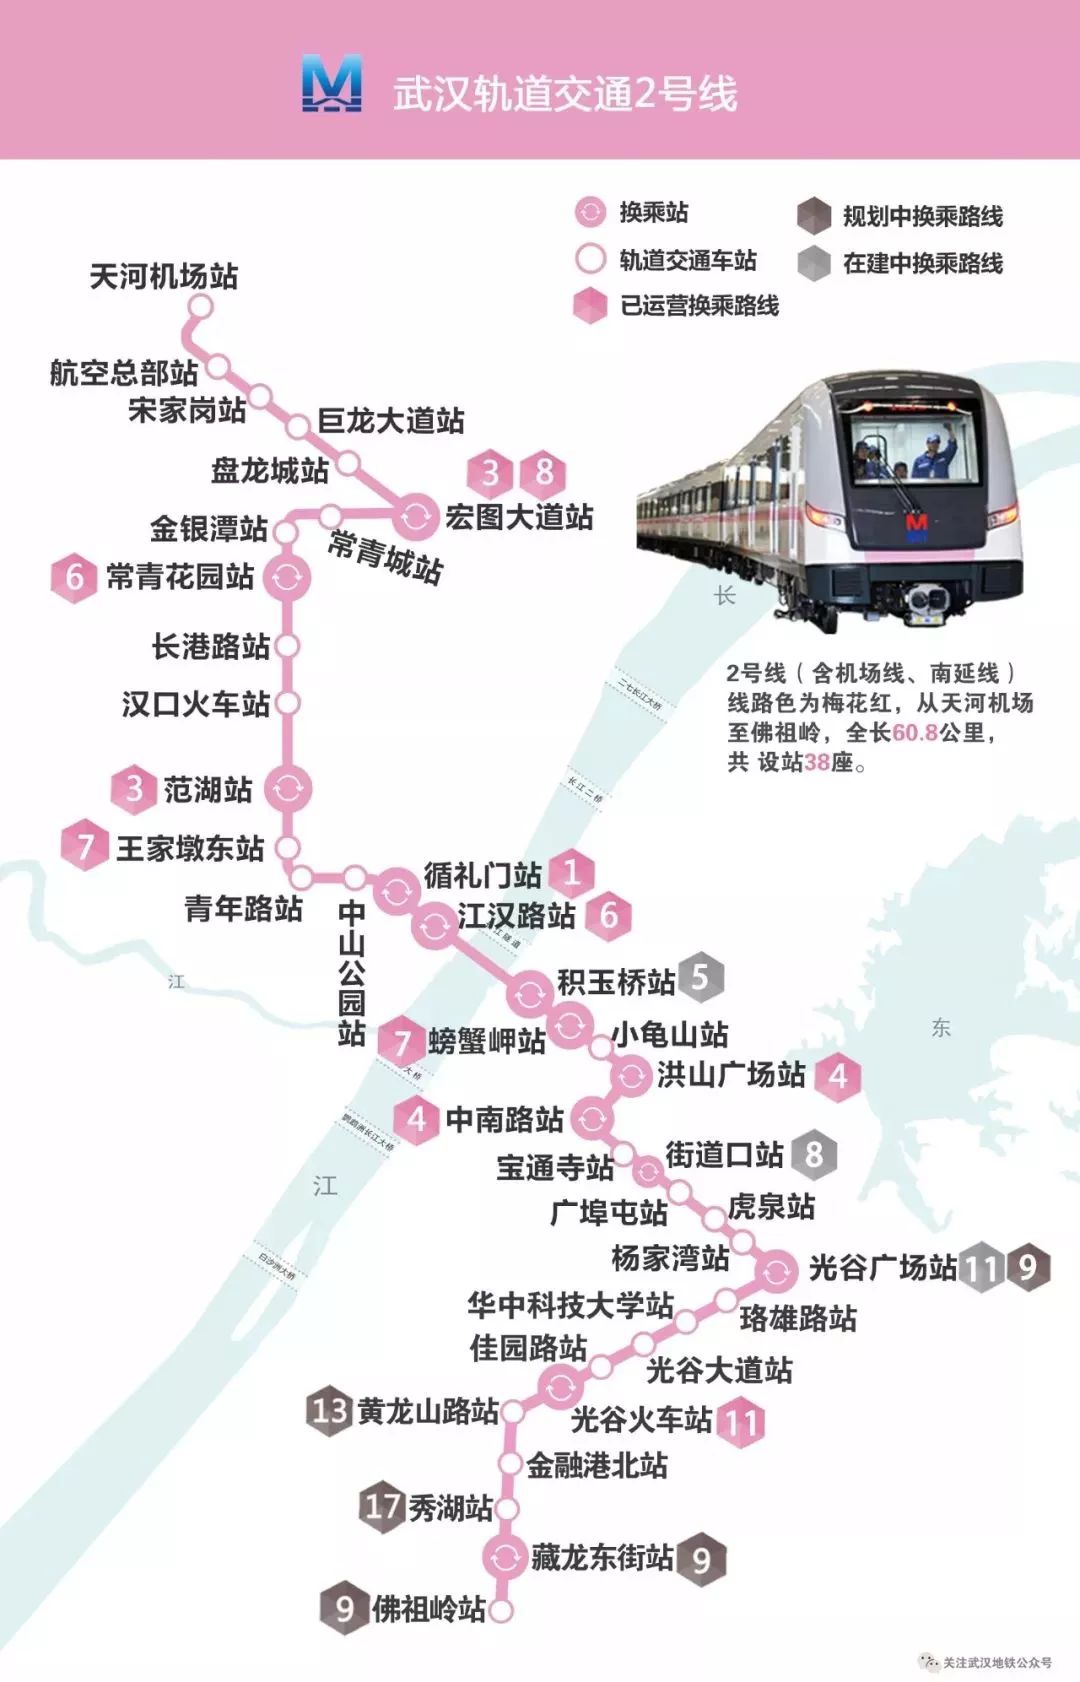 建设之路 历历在目 武汉轨道交通2号线南延线工程作为支持东湖示范区